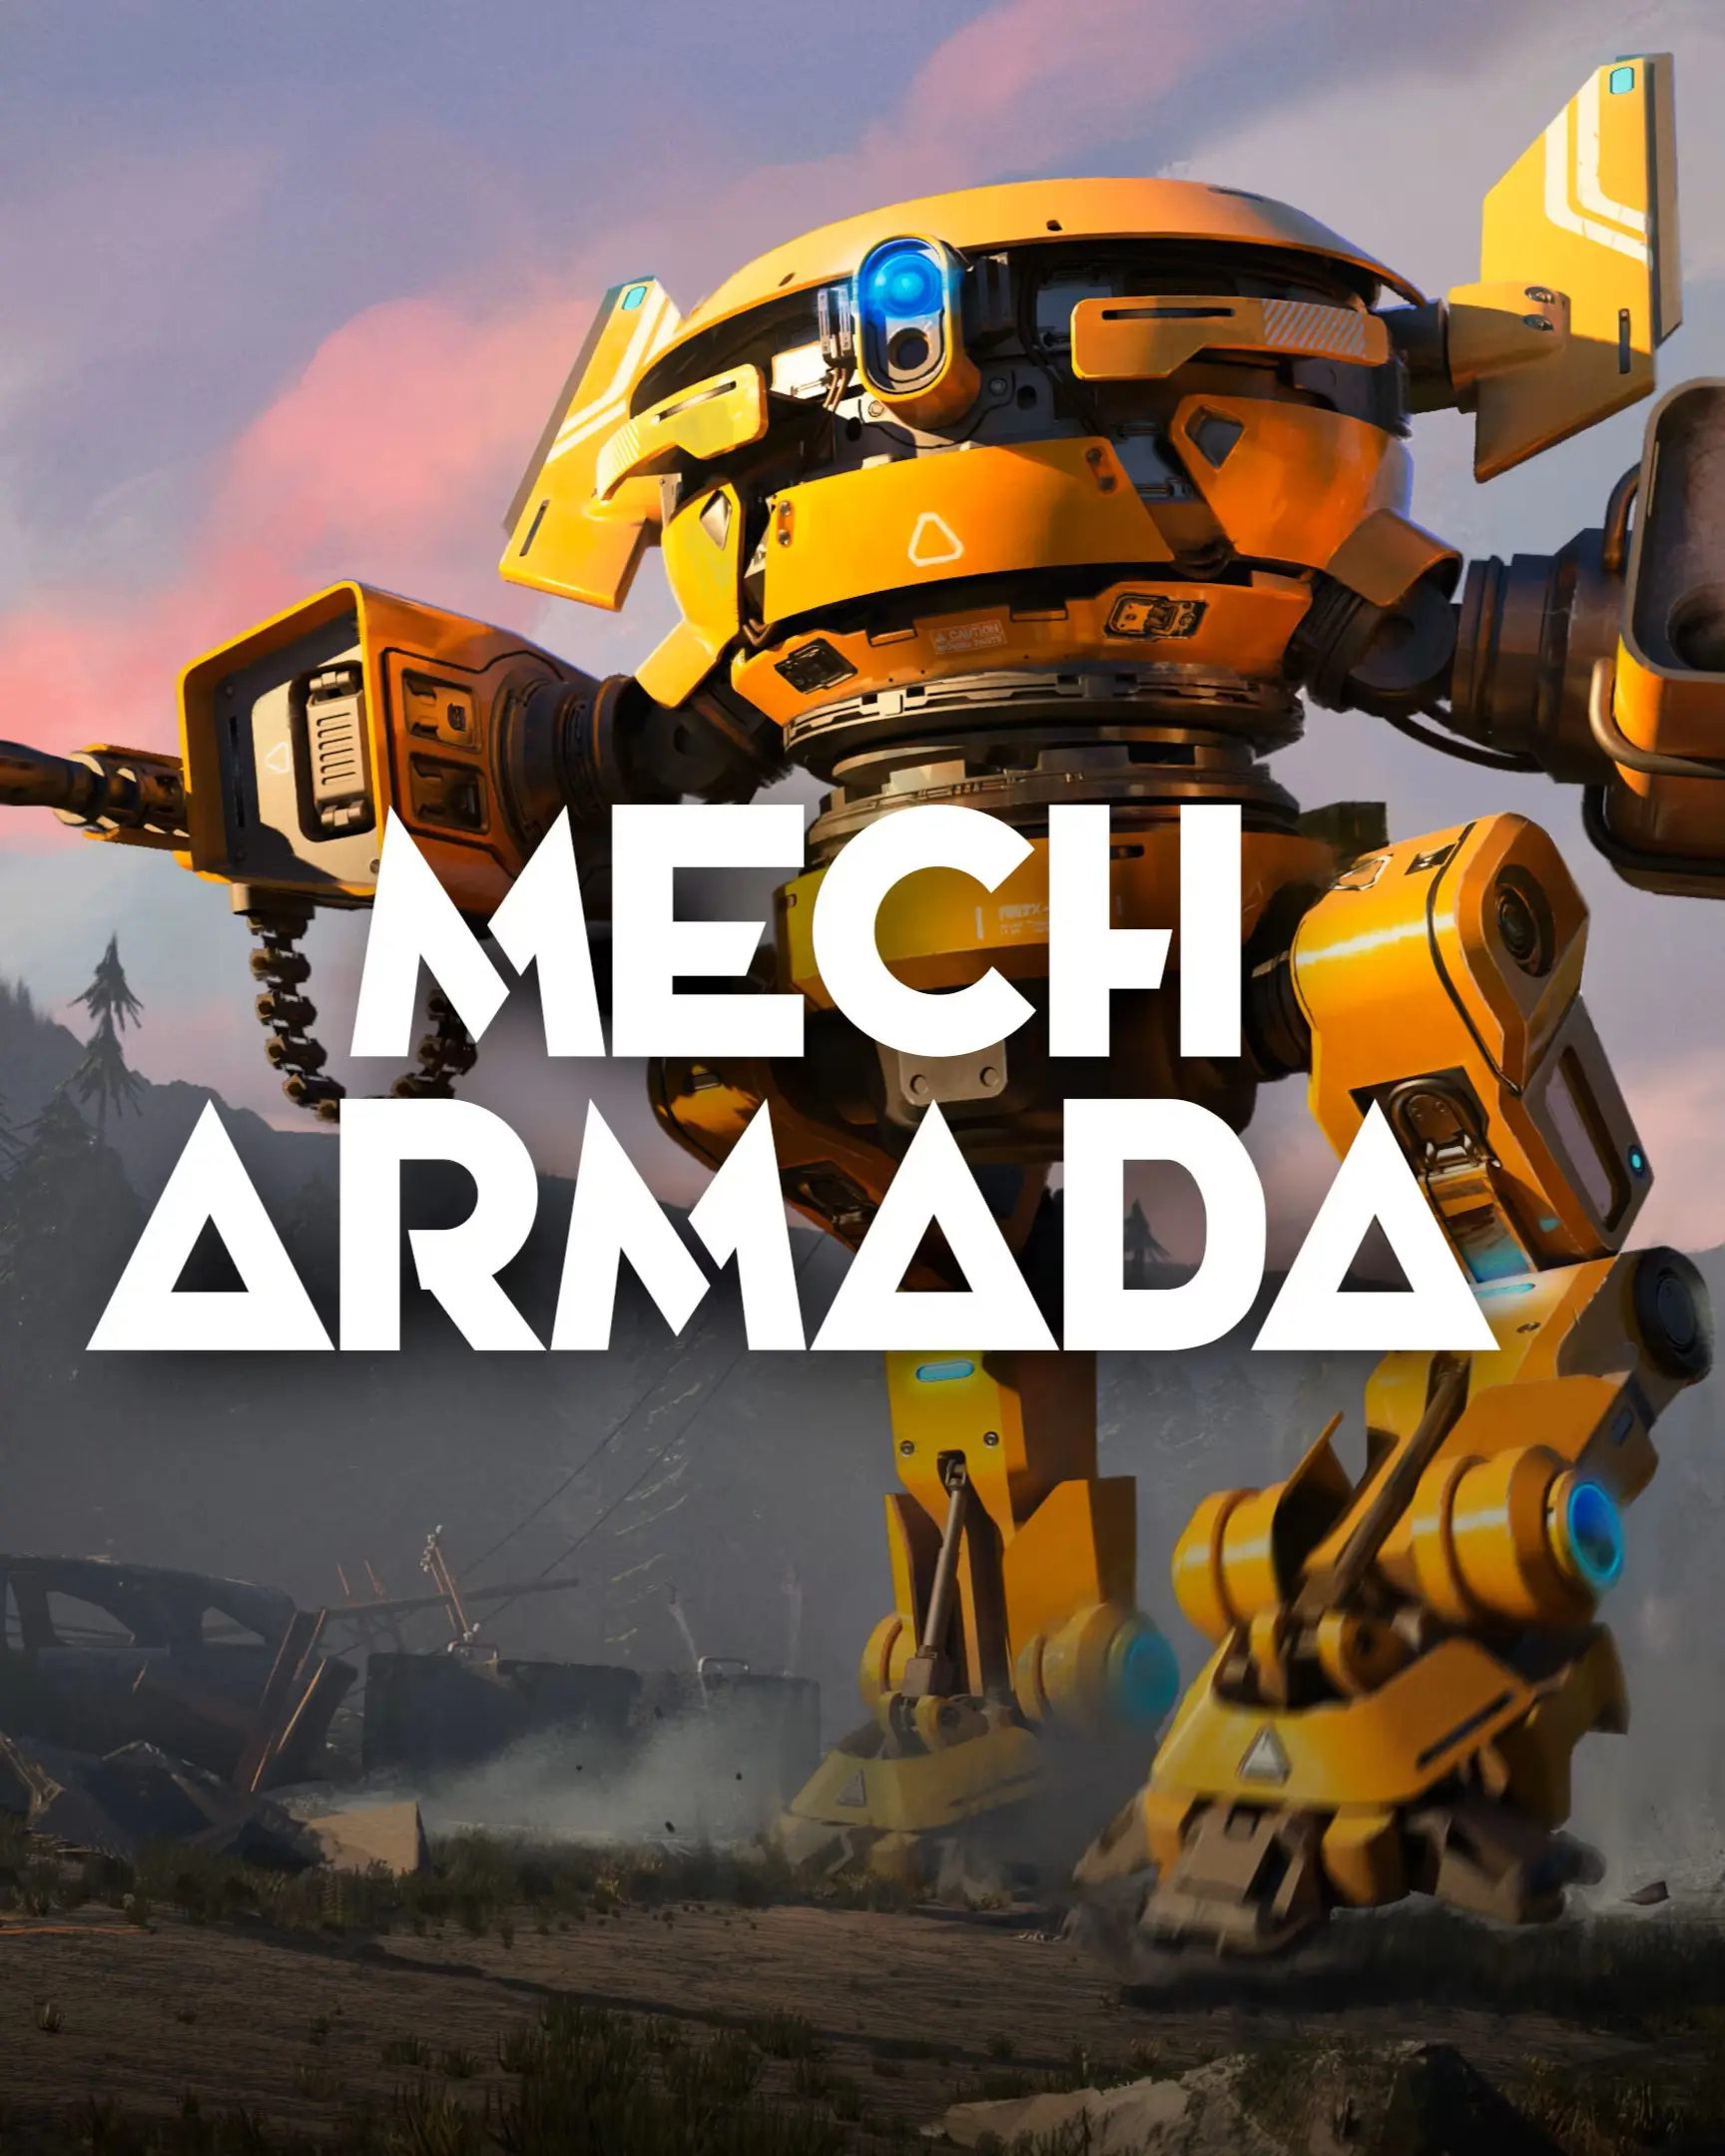 Mech Armada (AR) (Xbox One / Xbox Series X|S) - Xbox Live - Digital Code